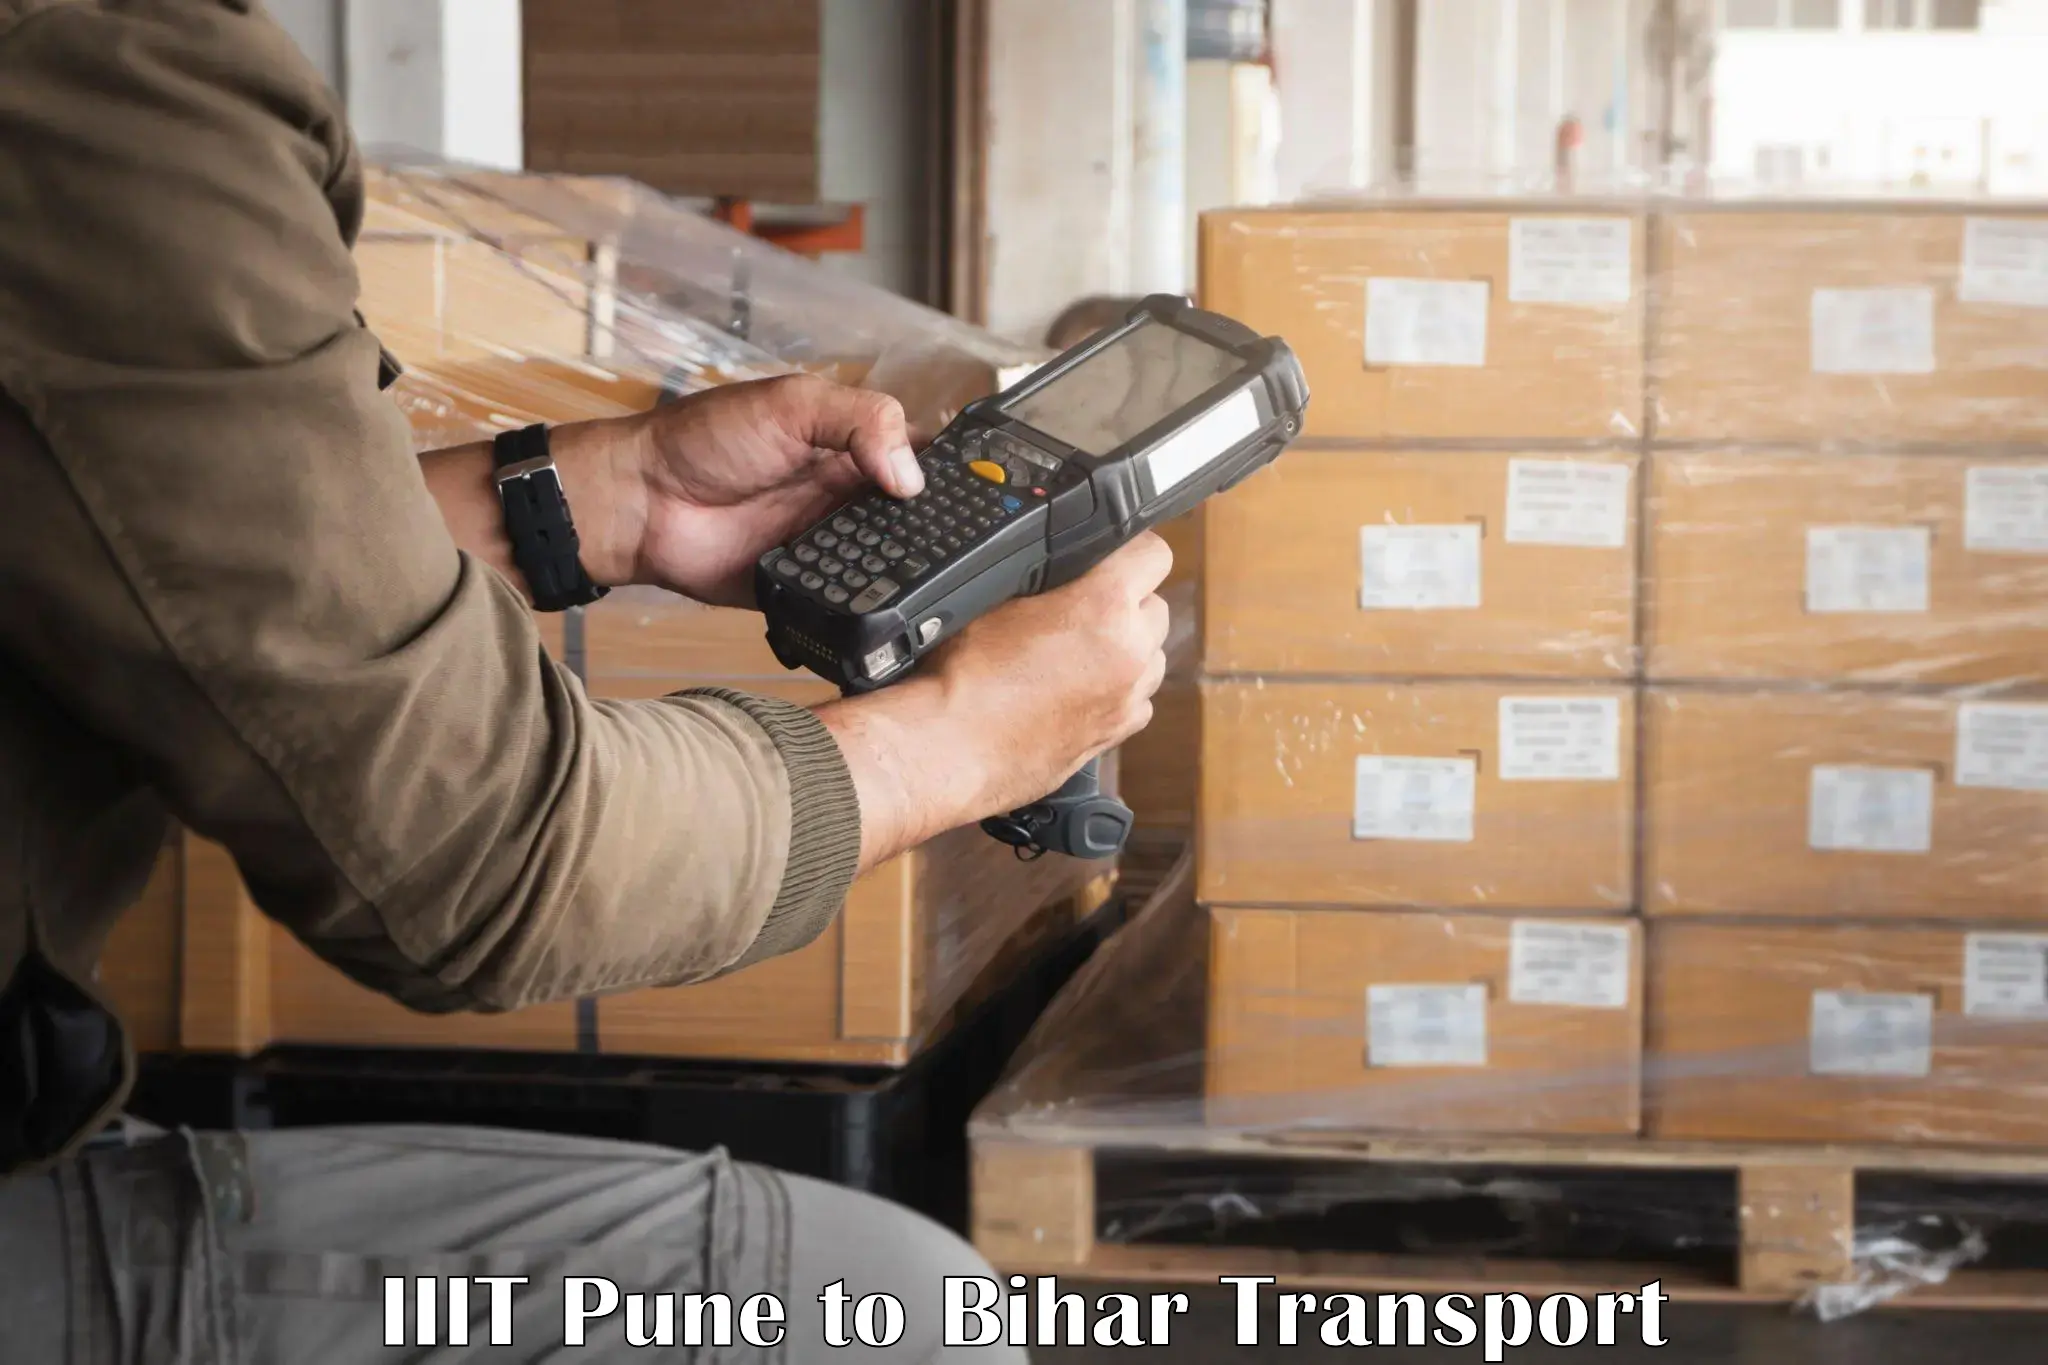 Cargo transport services in IIIT Pune to Bakhtiarpur